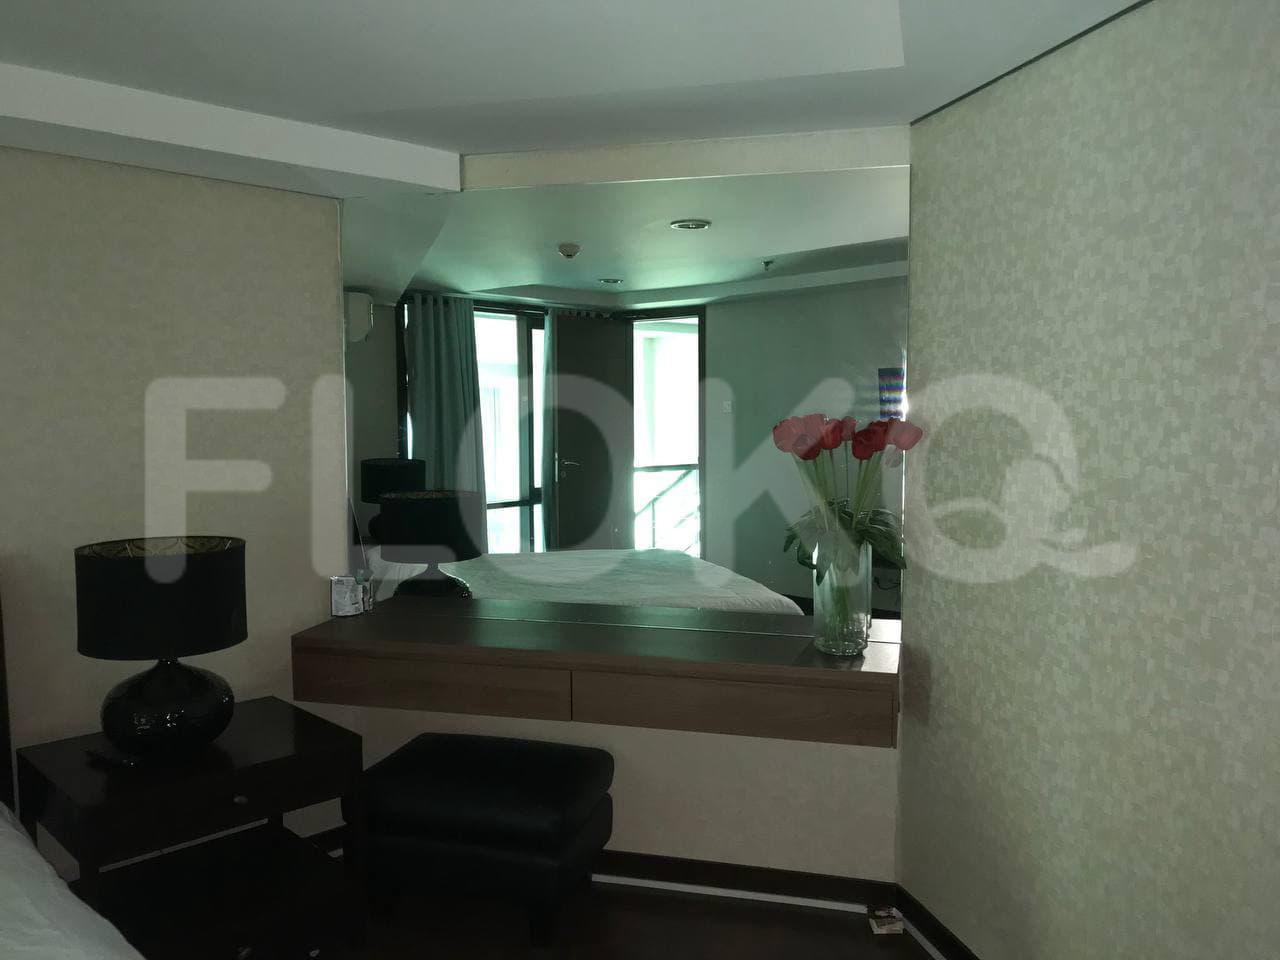 Sewa Apartemen Bellagio Mansion Tipe 3 Kamar Tidur di Lantai 7 fme2a4